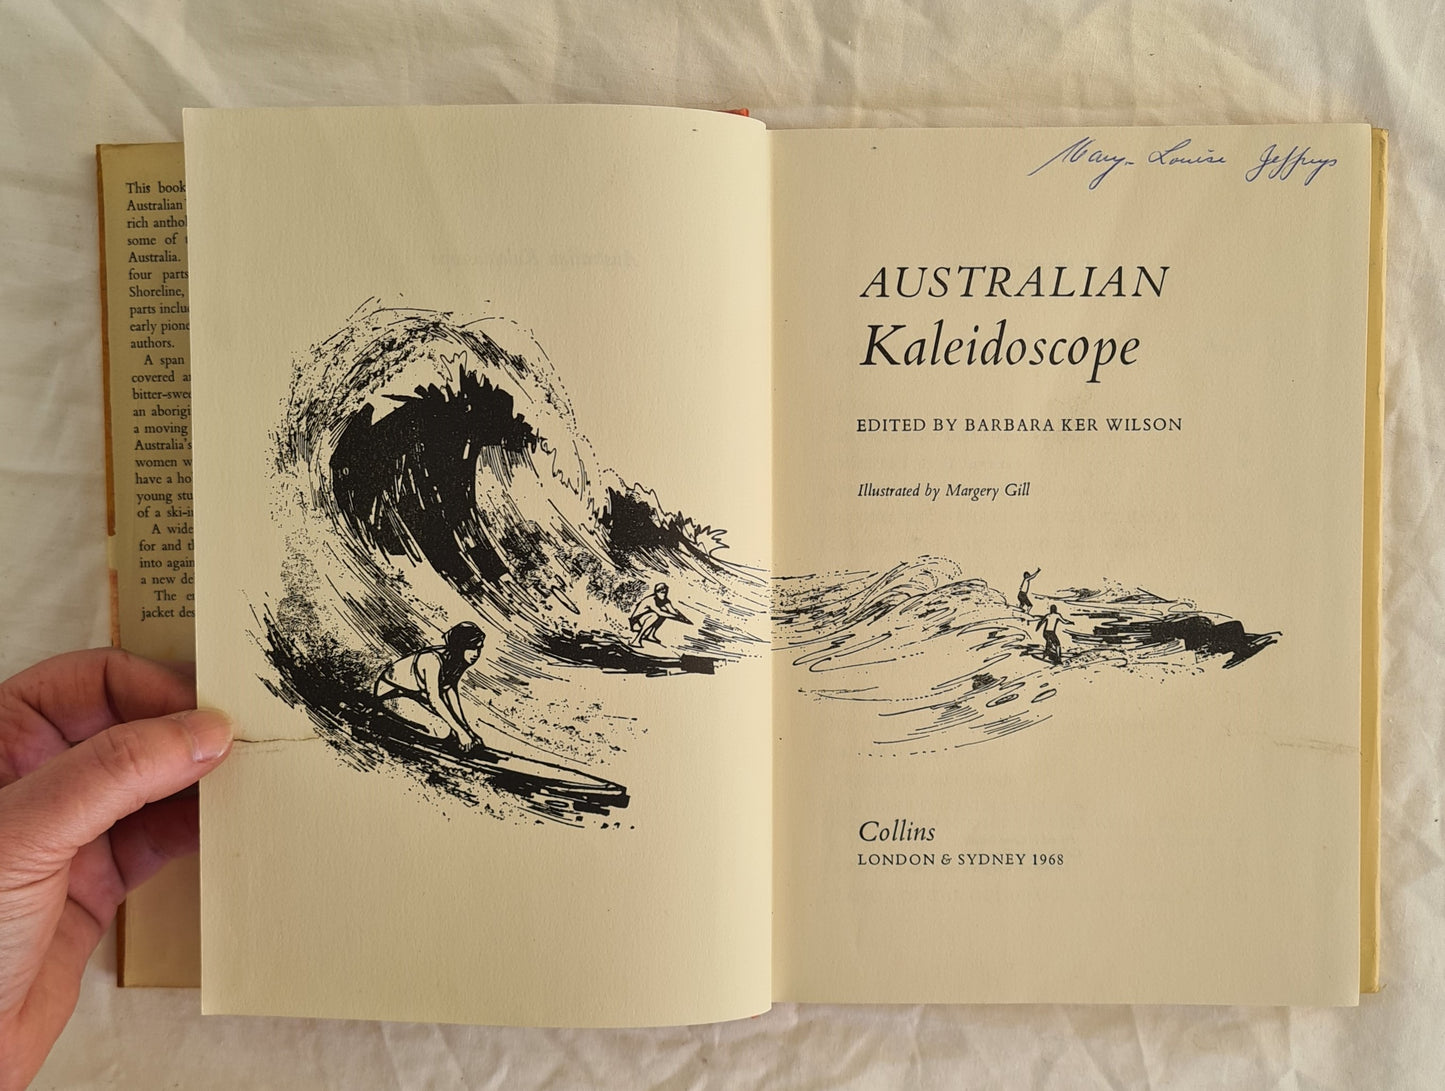 Australian Kaleidoscope by Barbara Ker Wilson